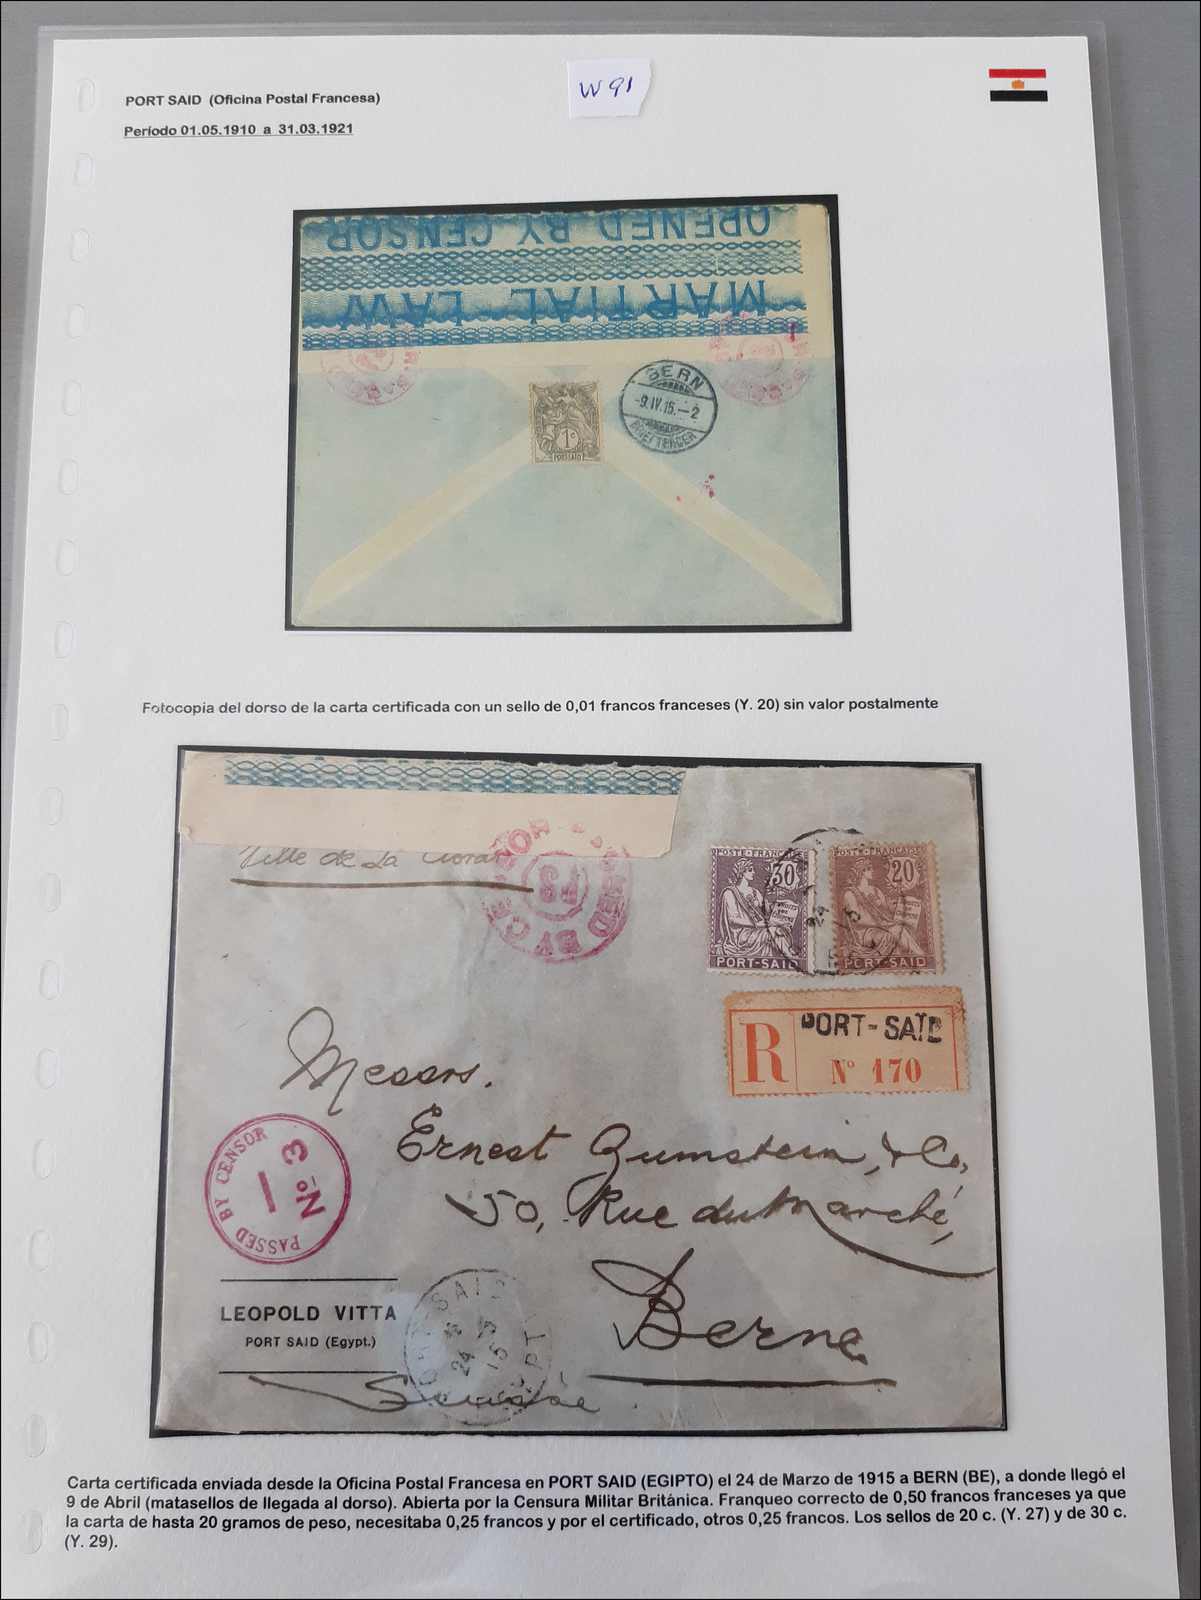 Lot 669 - andere gebiete Ägypten Französsische Postämter -  Rolli Auctions Auction #68 Day 1